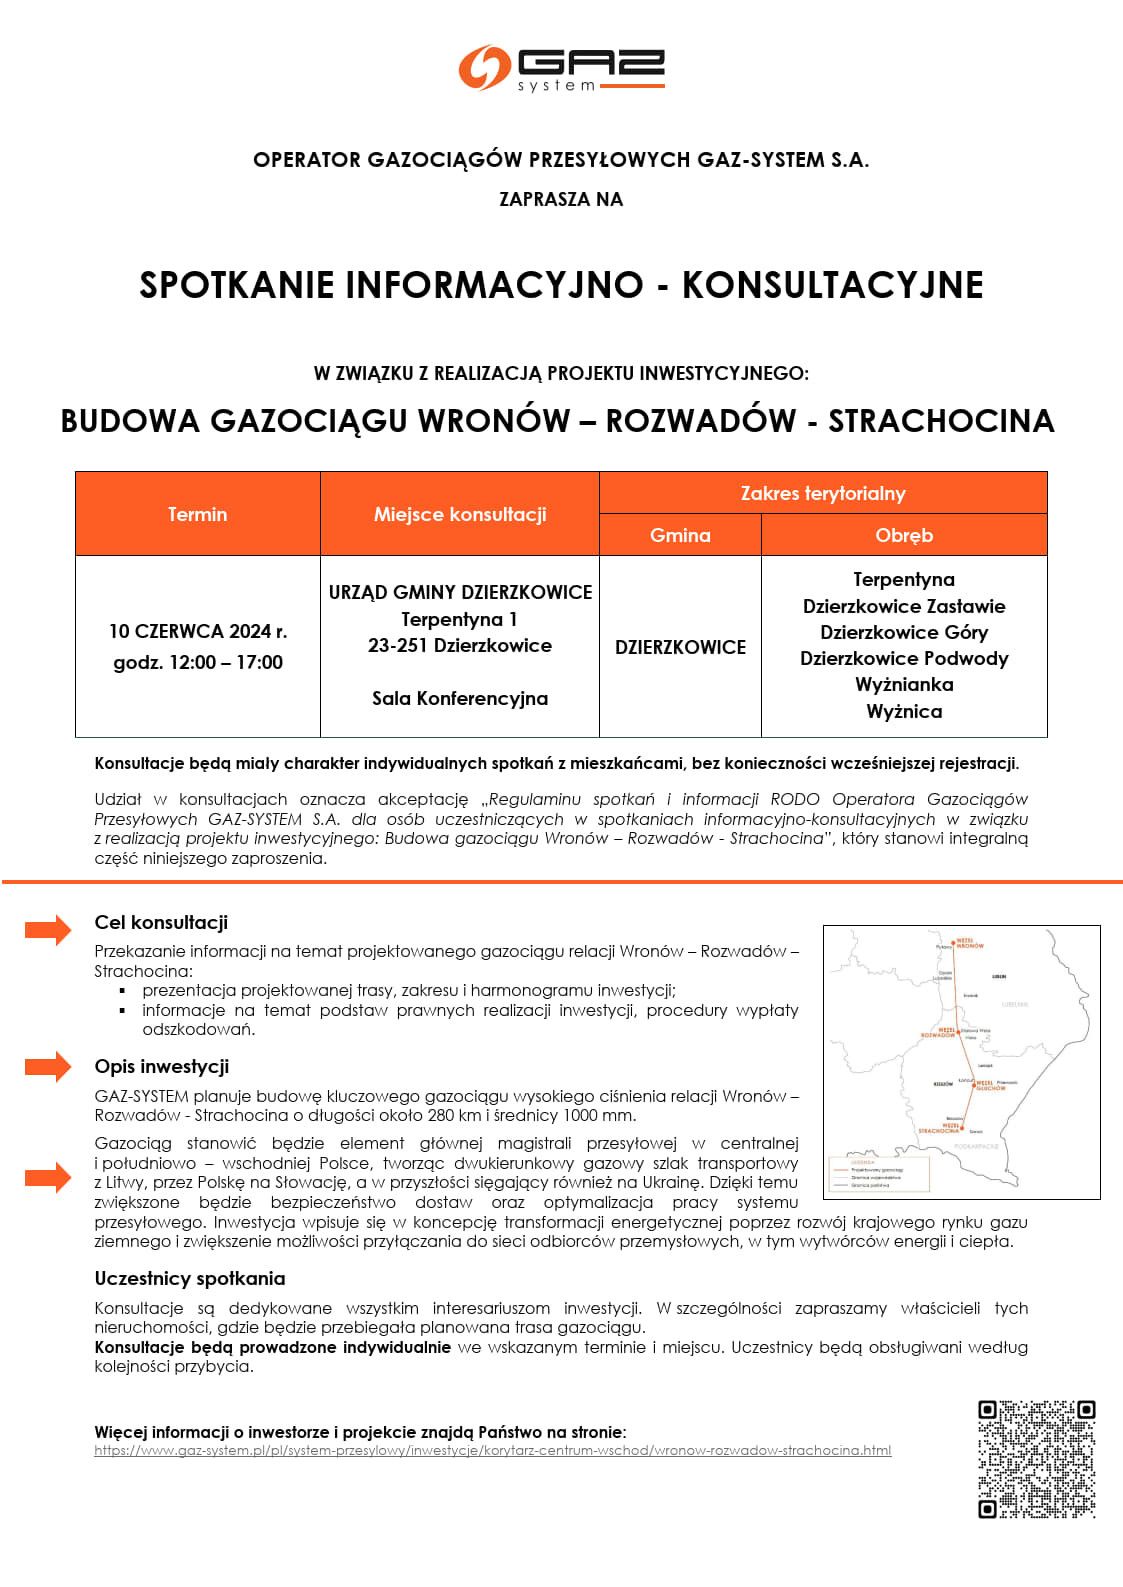 Spotkanie informacyjno - konsultacyjne budowa gazociągu Wronów-Rozwadów-Strachocina - zdjęcie